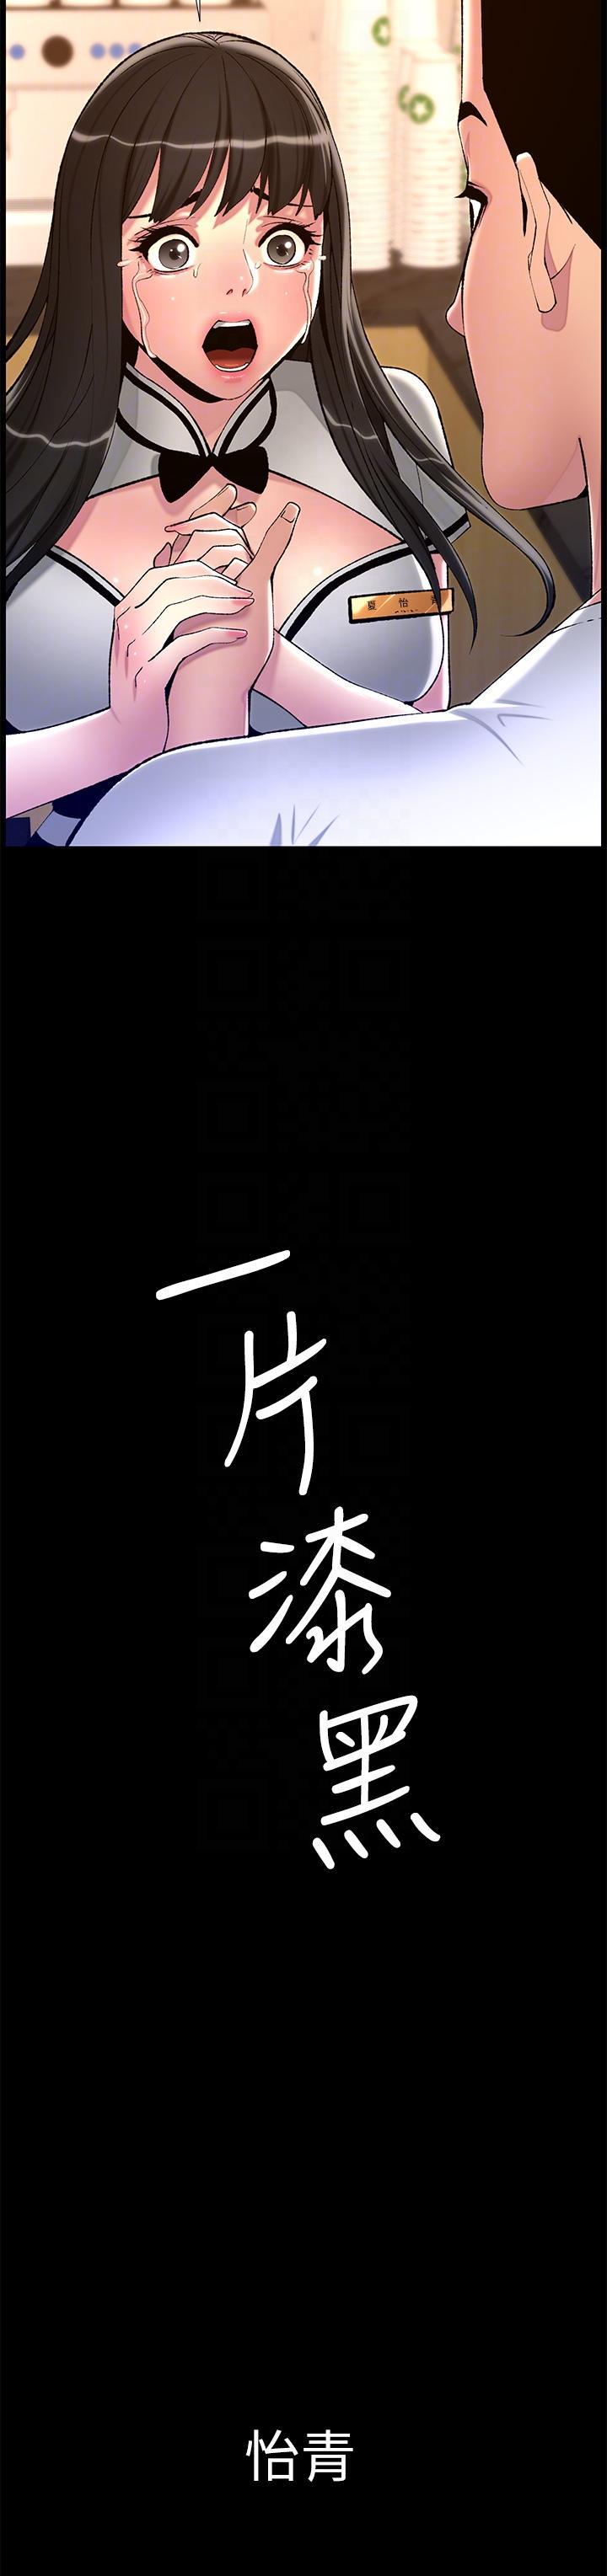 韩国污漫画 帝王App 第90话 最终话 游戏重新下载中… 18